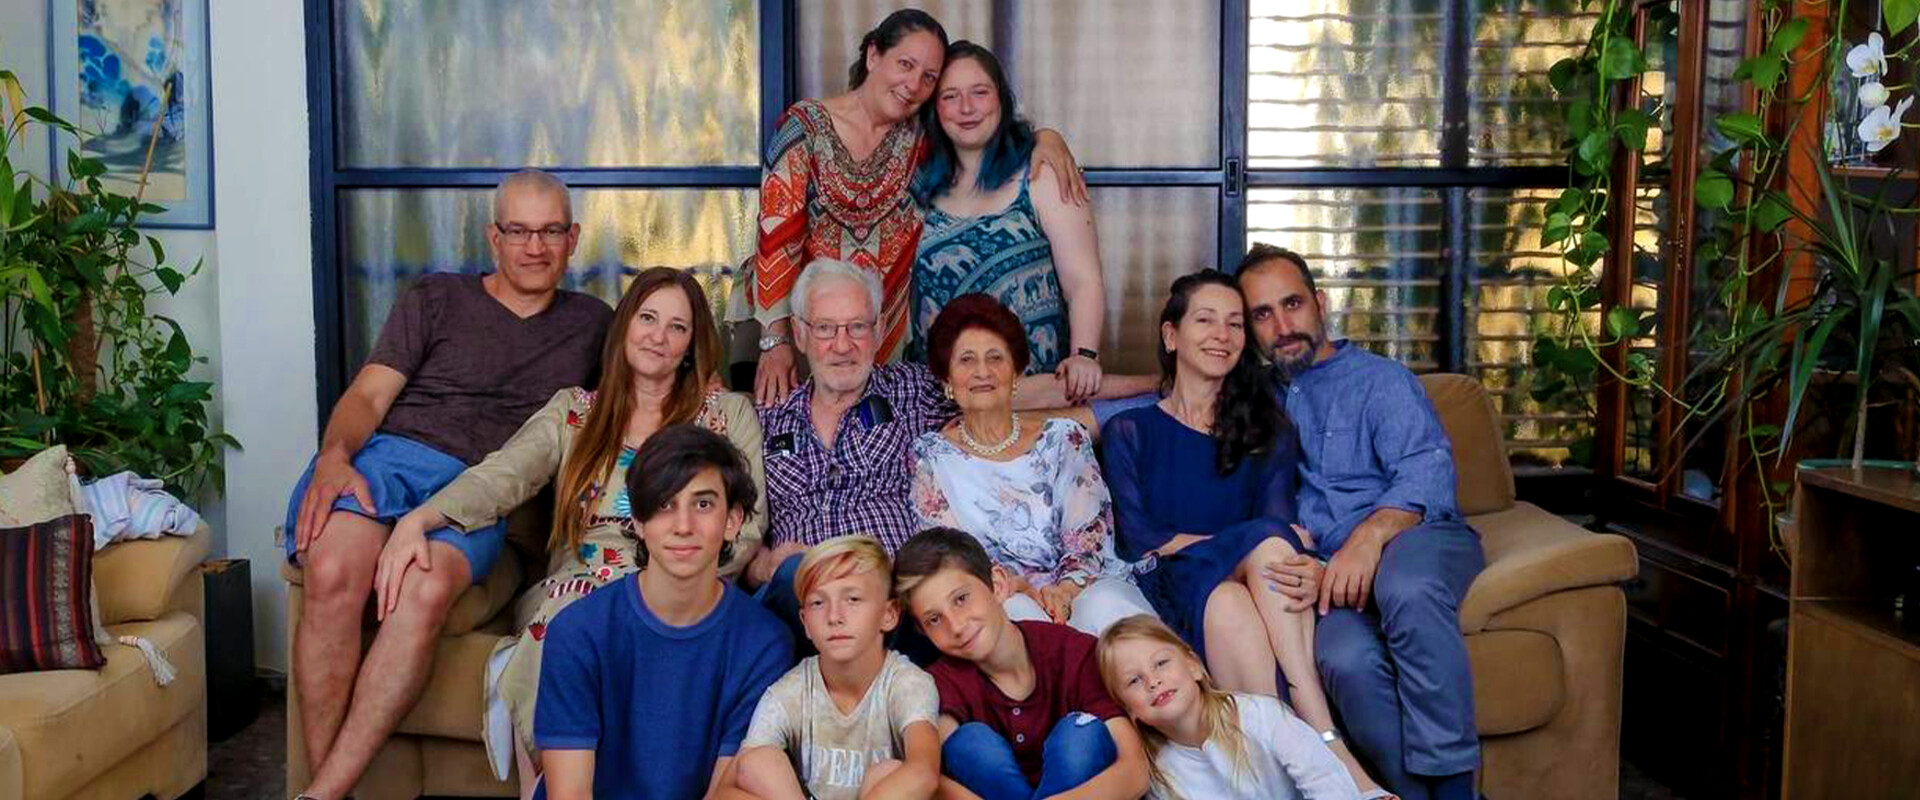 נעמי עם המשפחה - הבנות, הנכדים ובעלה ראובן ז״ל (צילום: ינאי רובחה)